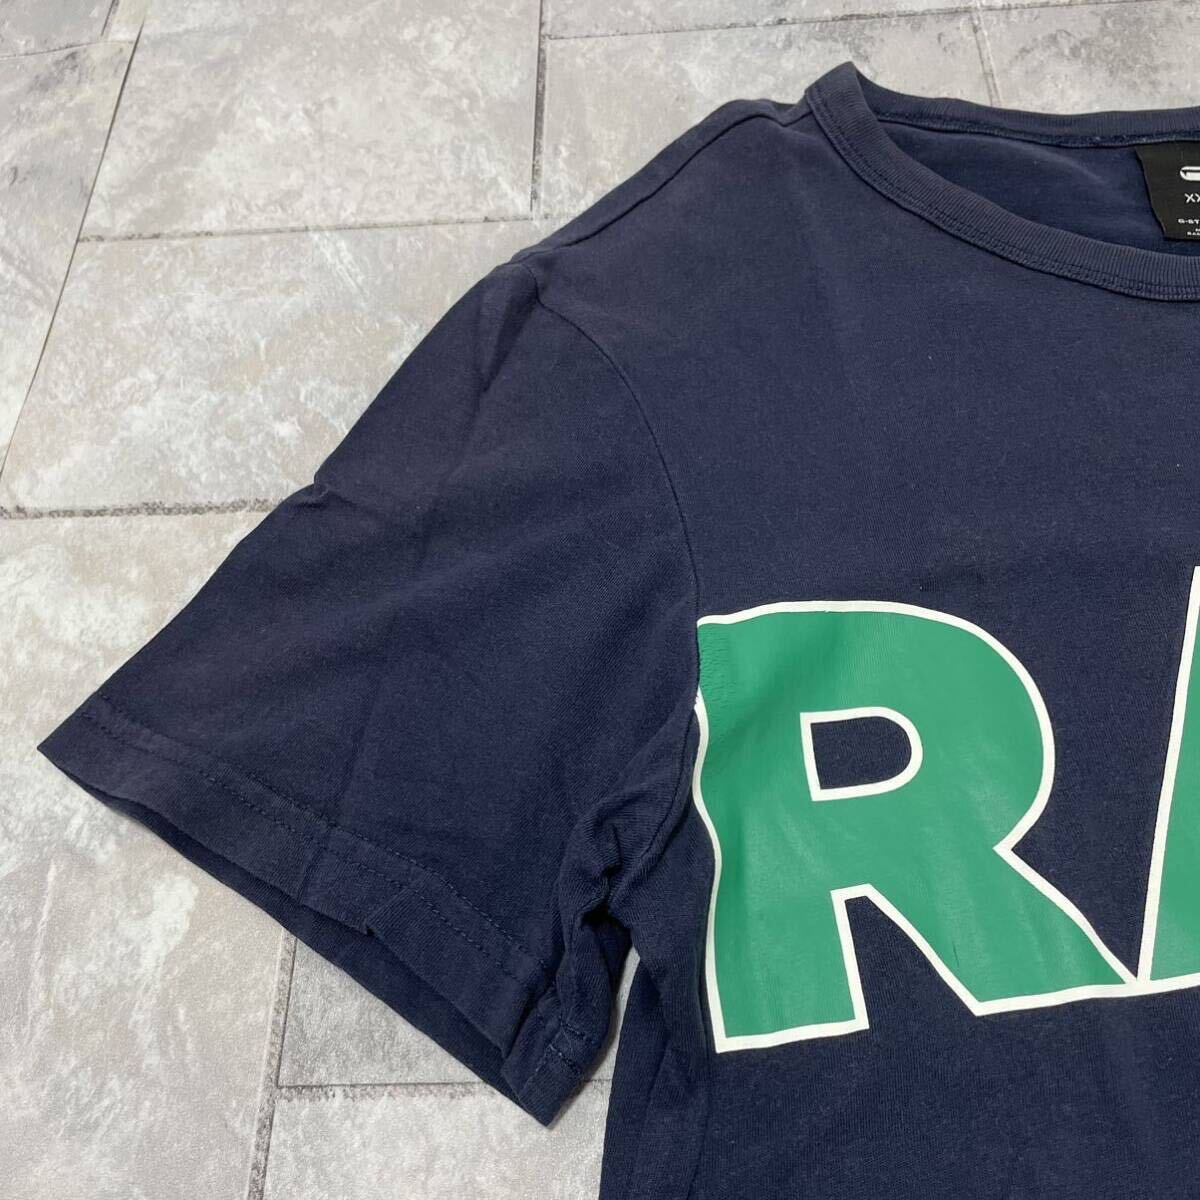 G-SWAR RAW ジースターロウ Tシャツ T-shirt TEE 半袖 ビッグプリントロゴ USA企画 RAW ネイビー サイズXXS 玉SS1742_画像3